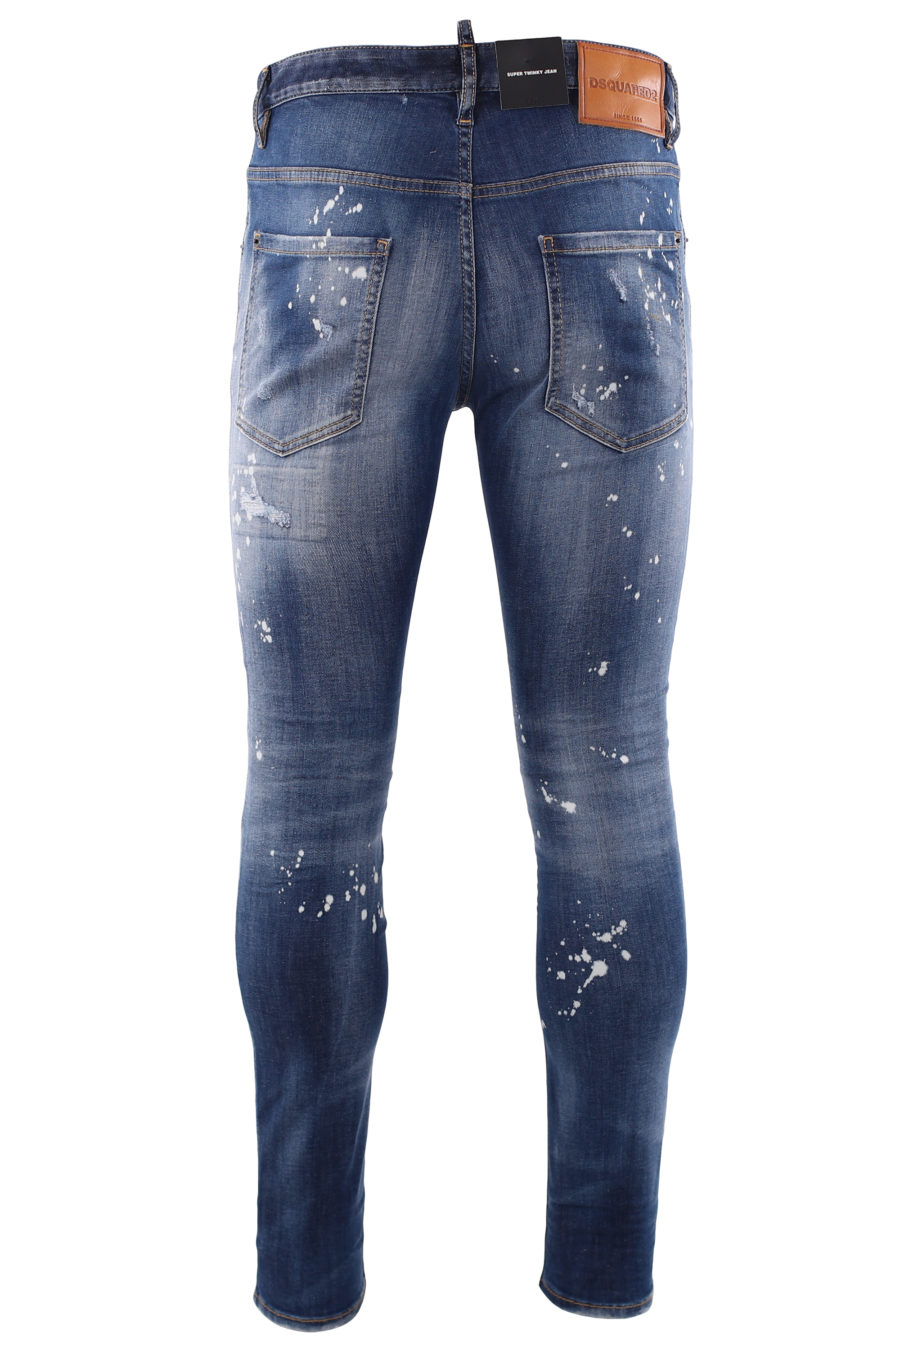 Tejano "super twinky jean" azul desgastado y pintura blanca - IMG 6683